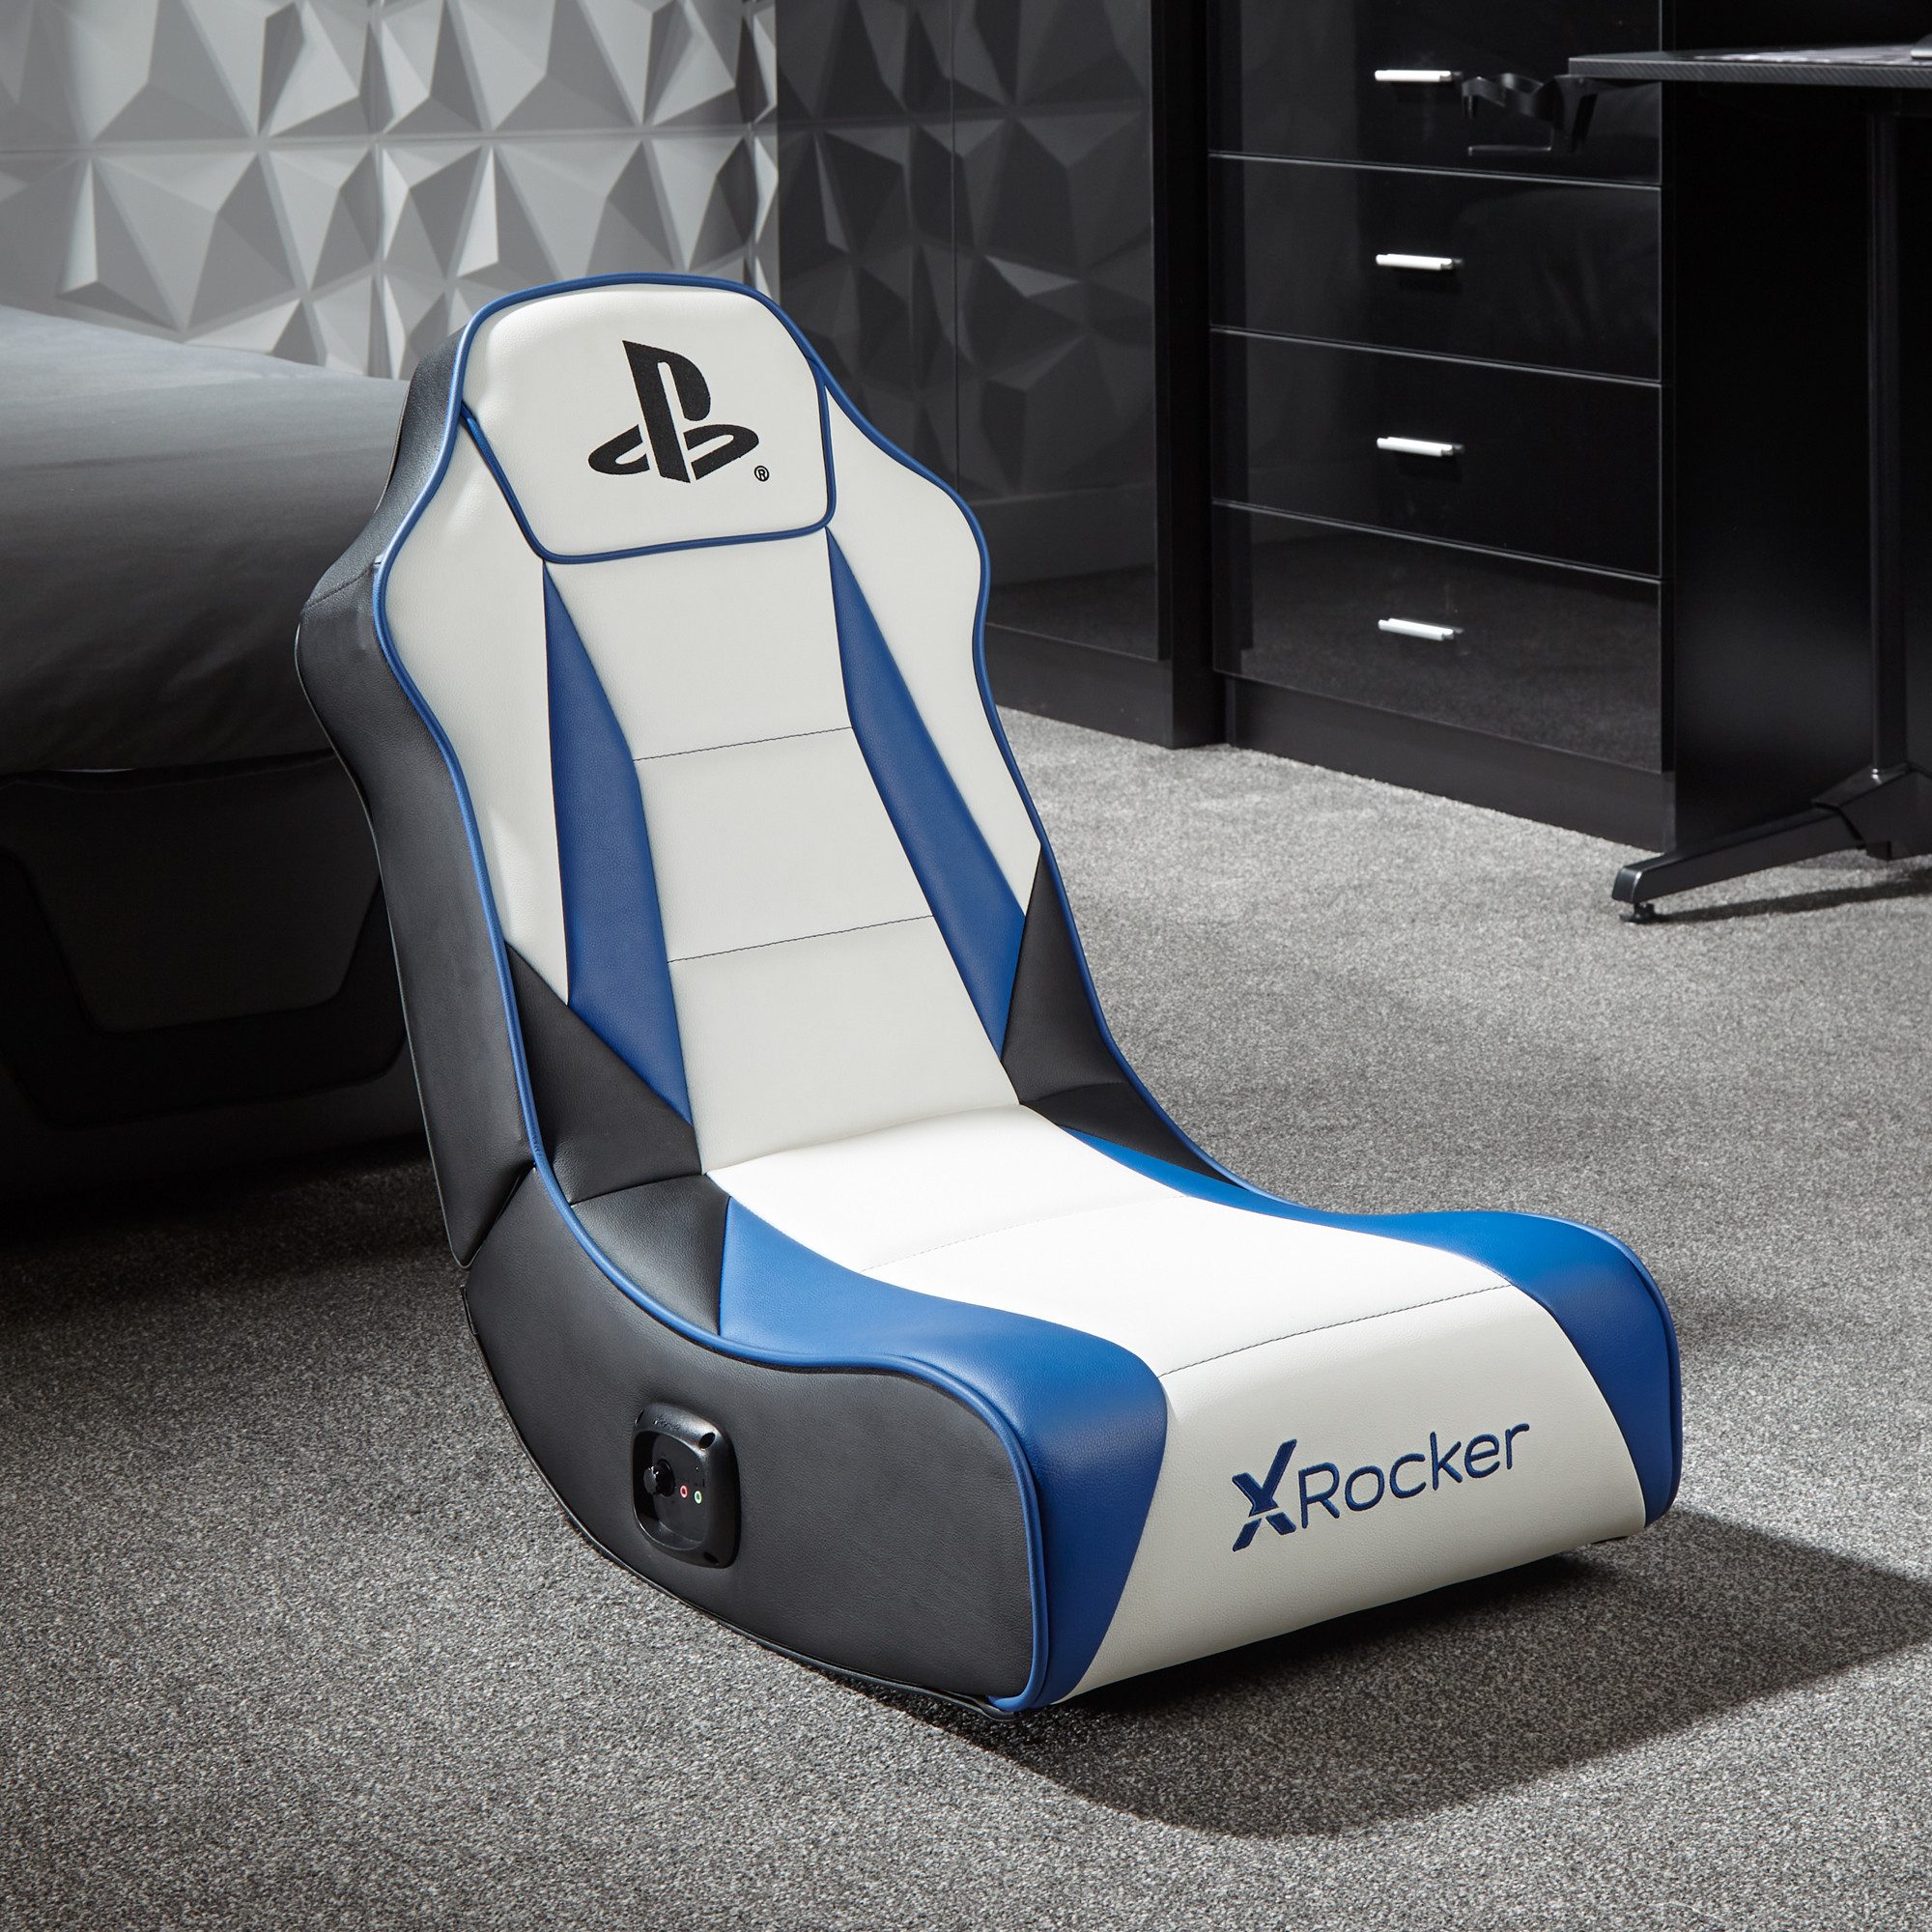 X Rocker Kindersessel PS5 Geist 2.0 Floor Rocker Gaming Кресла 2.0 Audiosystem, für Kinder, für Jugendliche, für Teenager